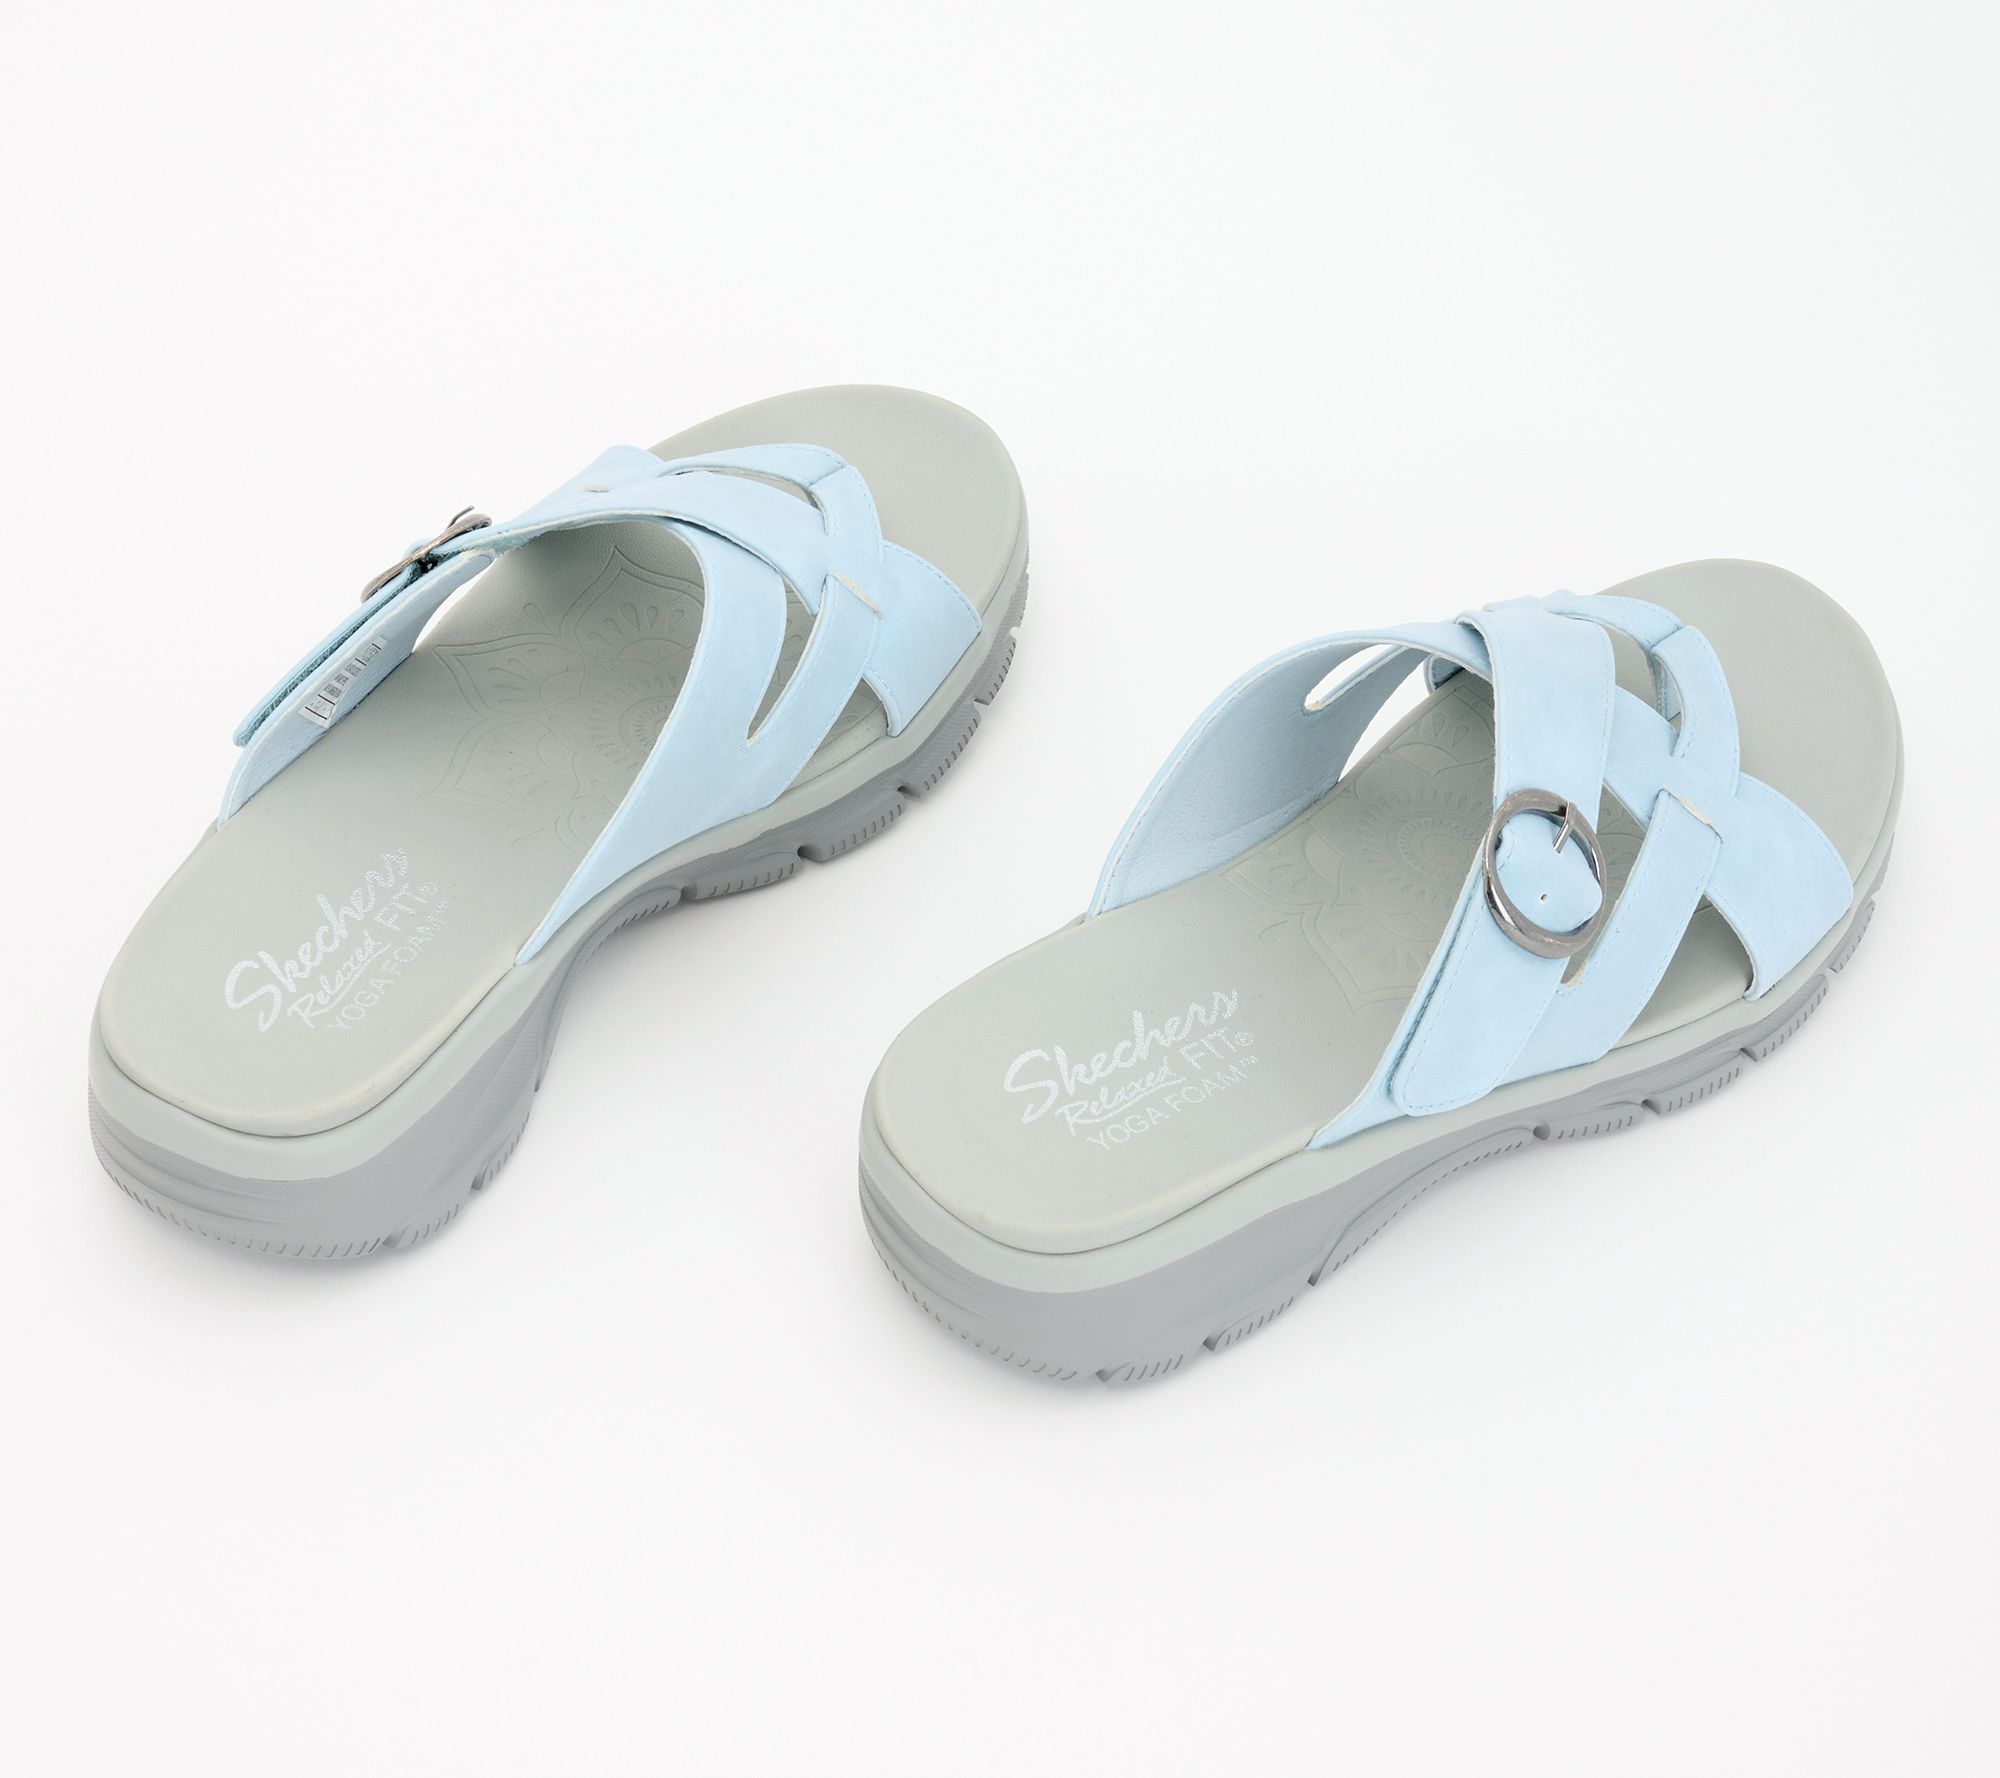 Skechers yoga foam sandals size 9